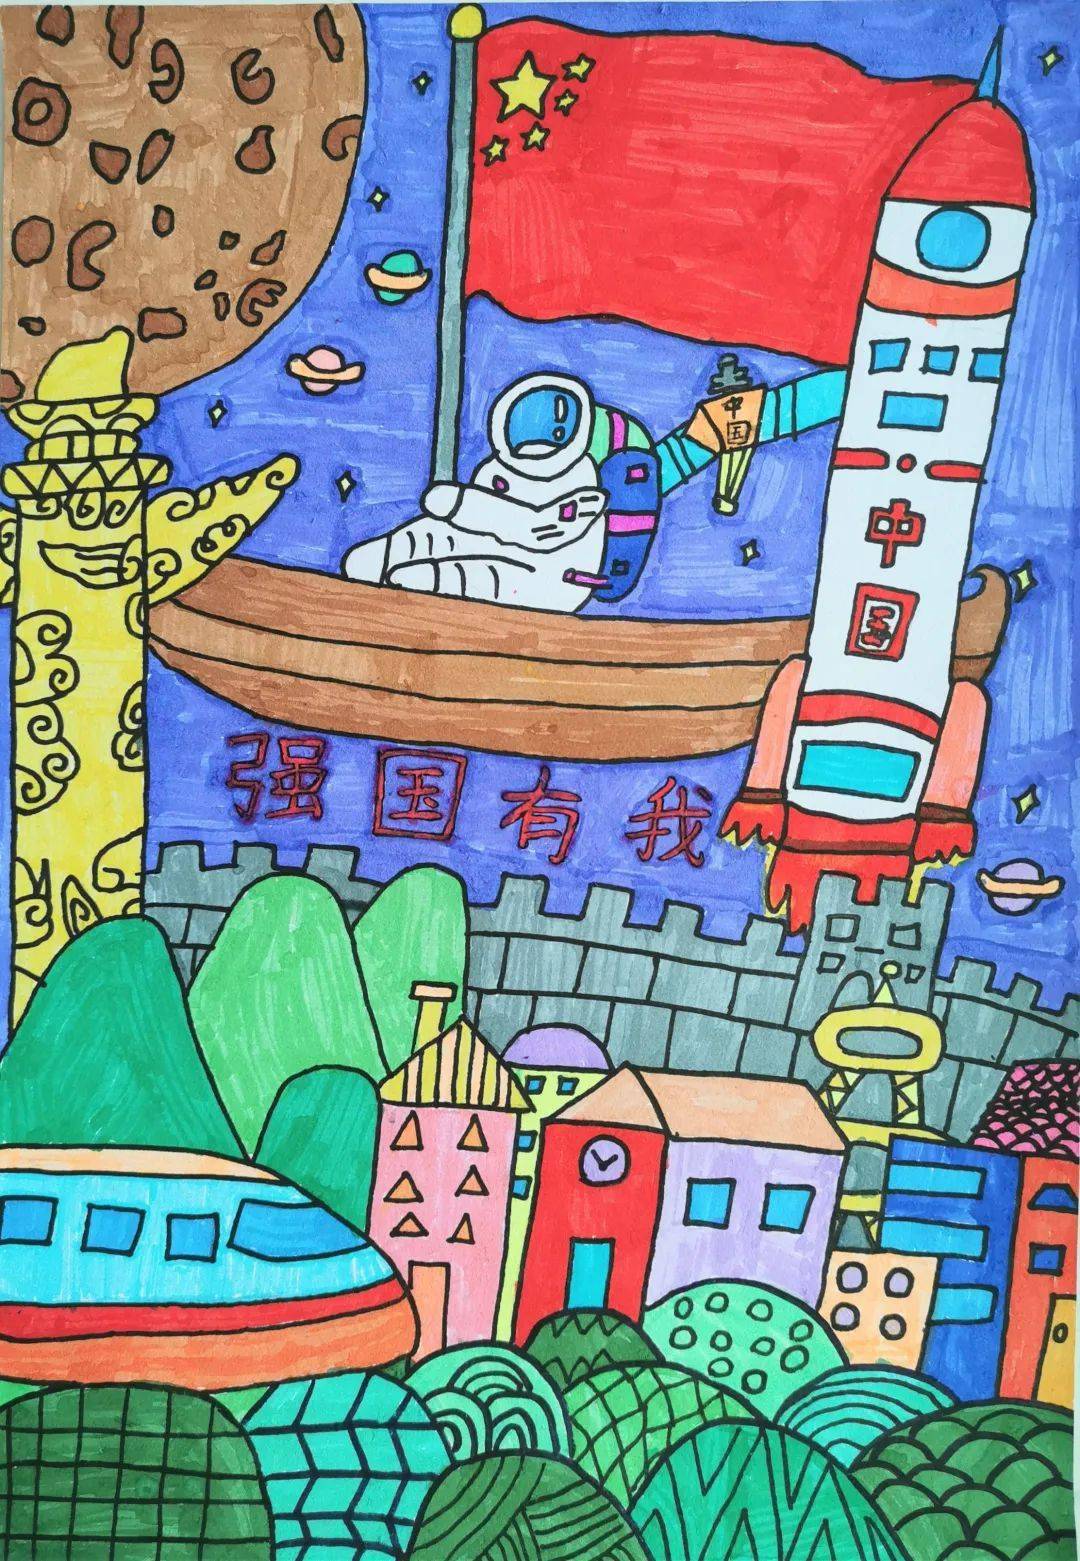 传红色基因做强国少年第二届艺术节主题儿童画大赛